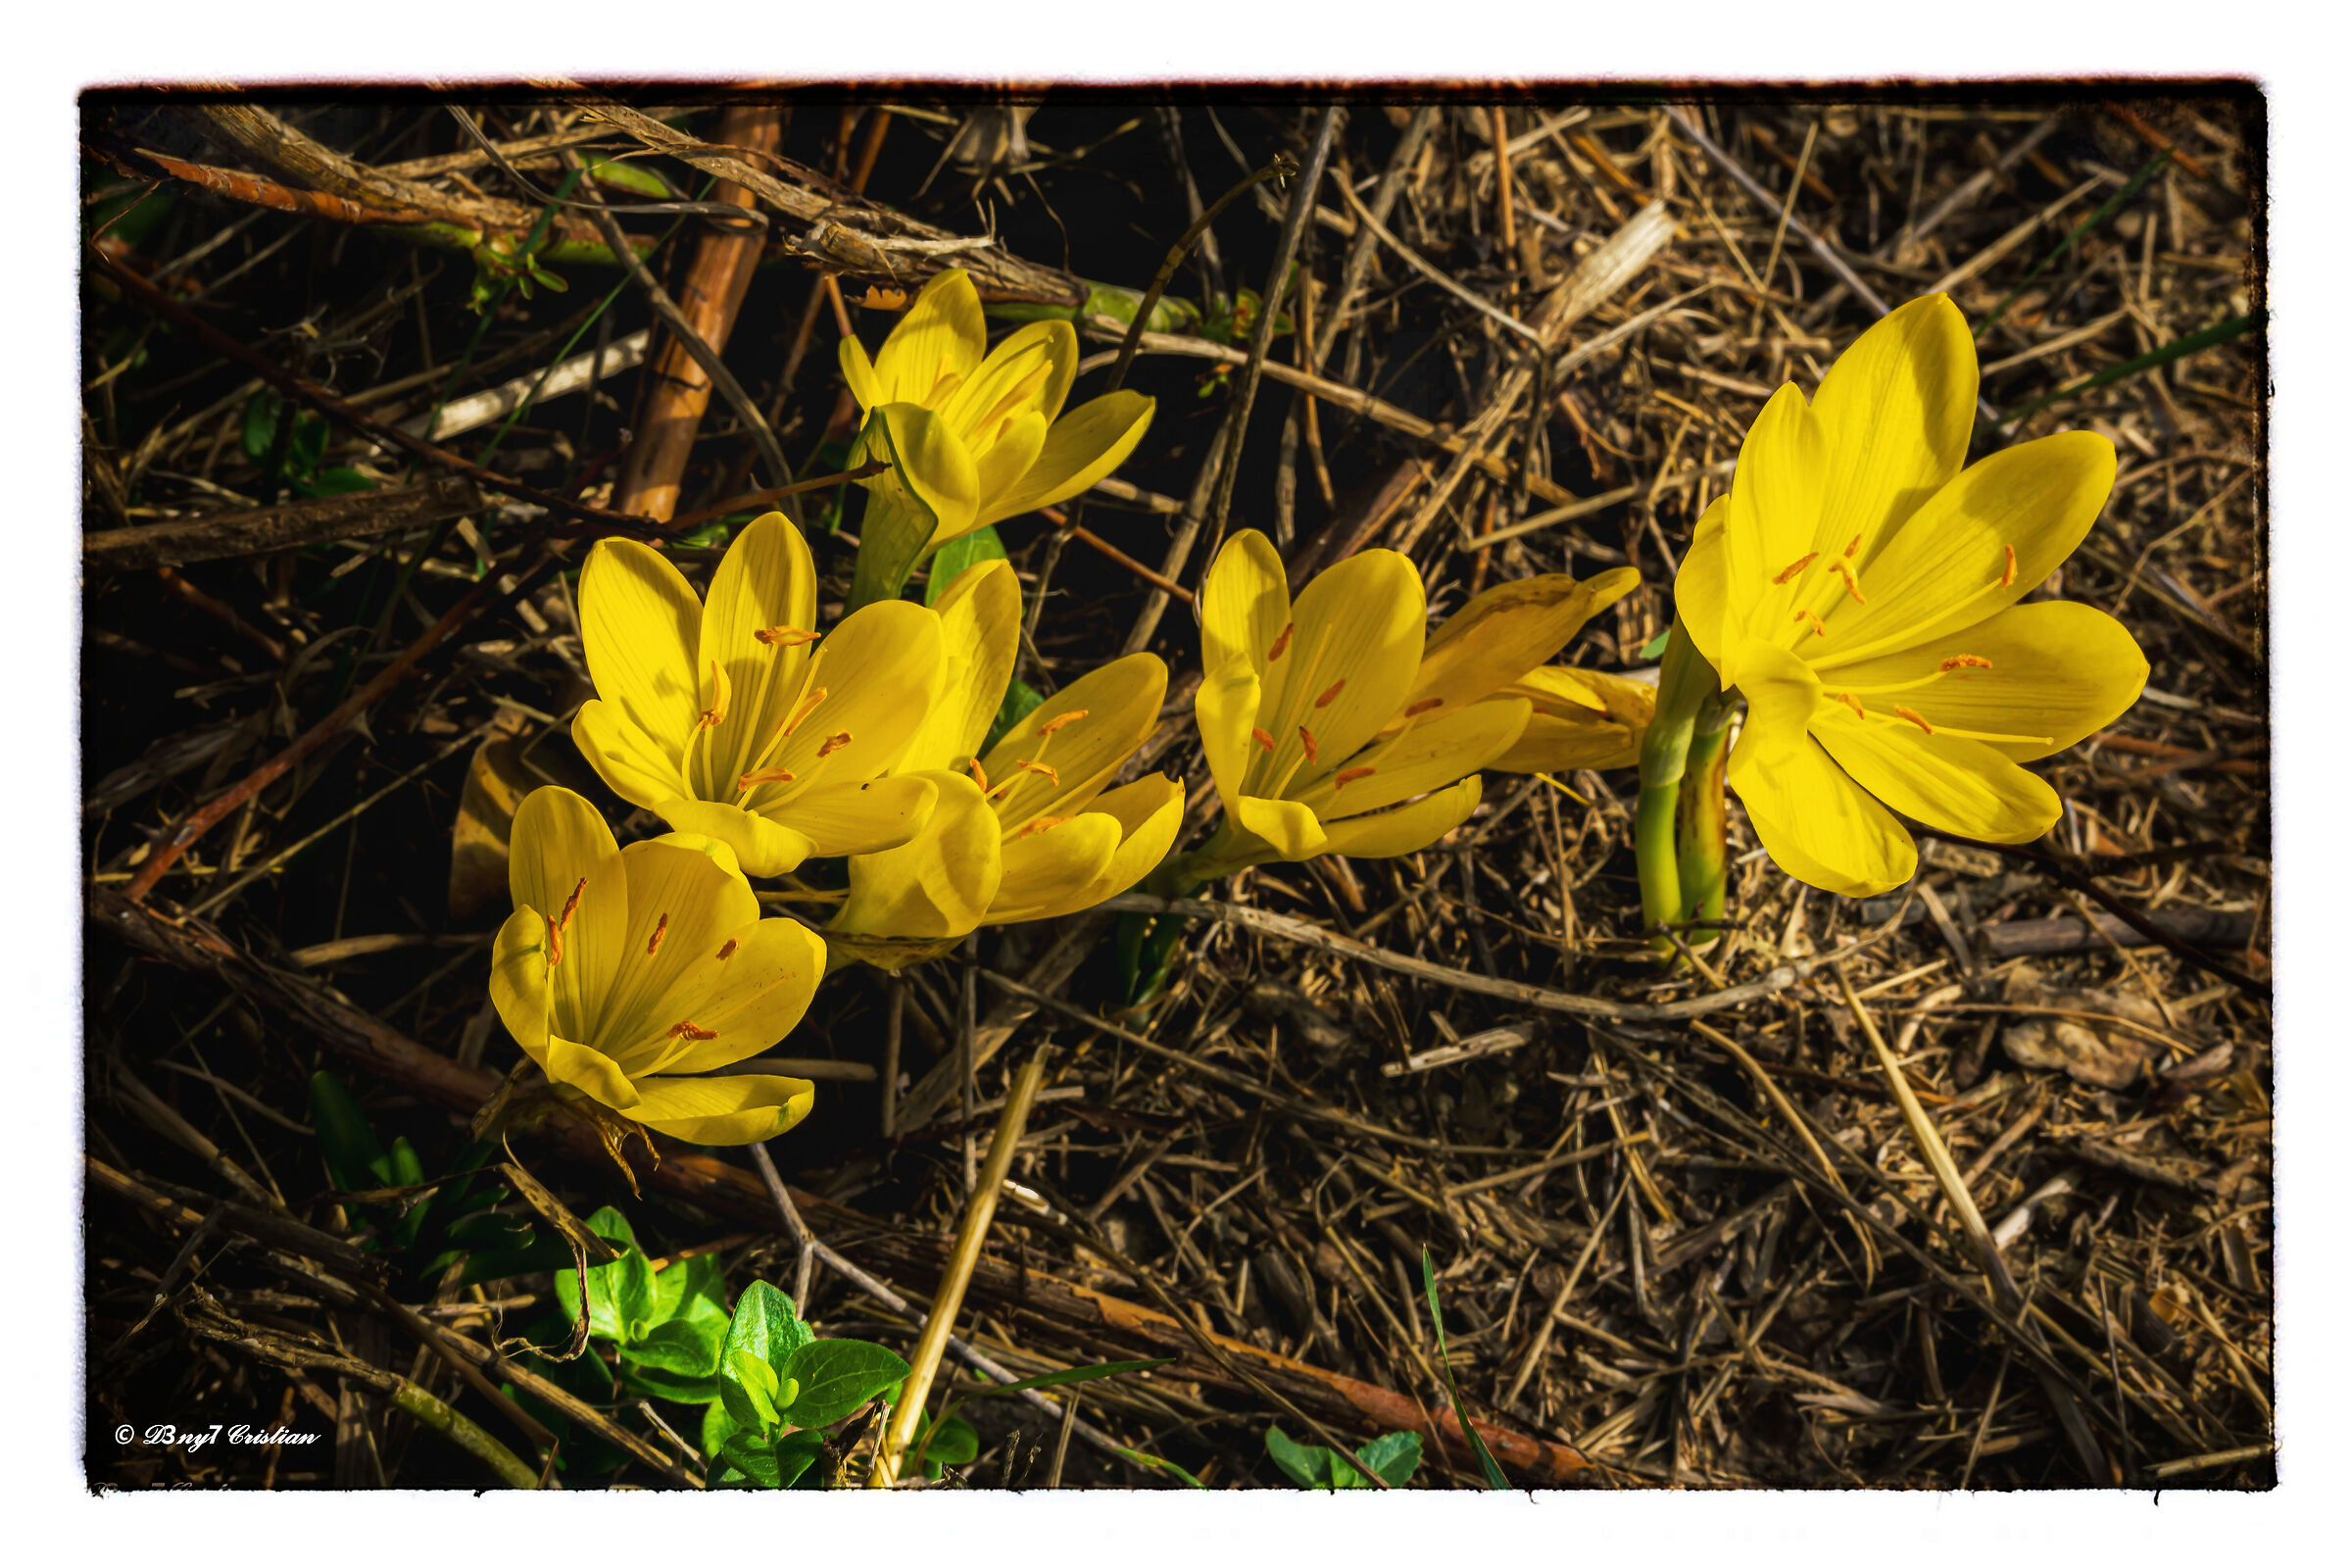 Sternbergia lutea/Zafferanastro giallo...